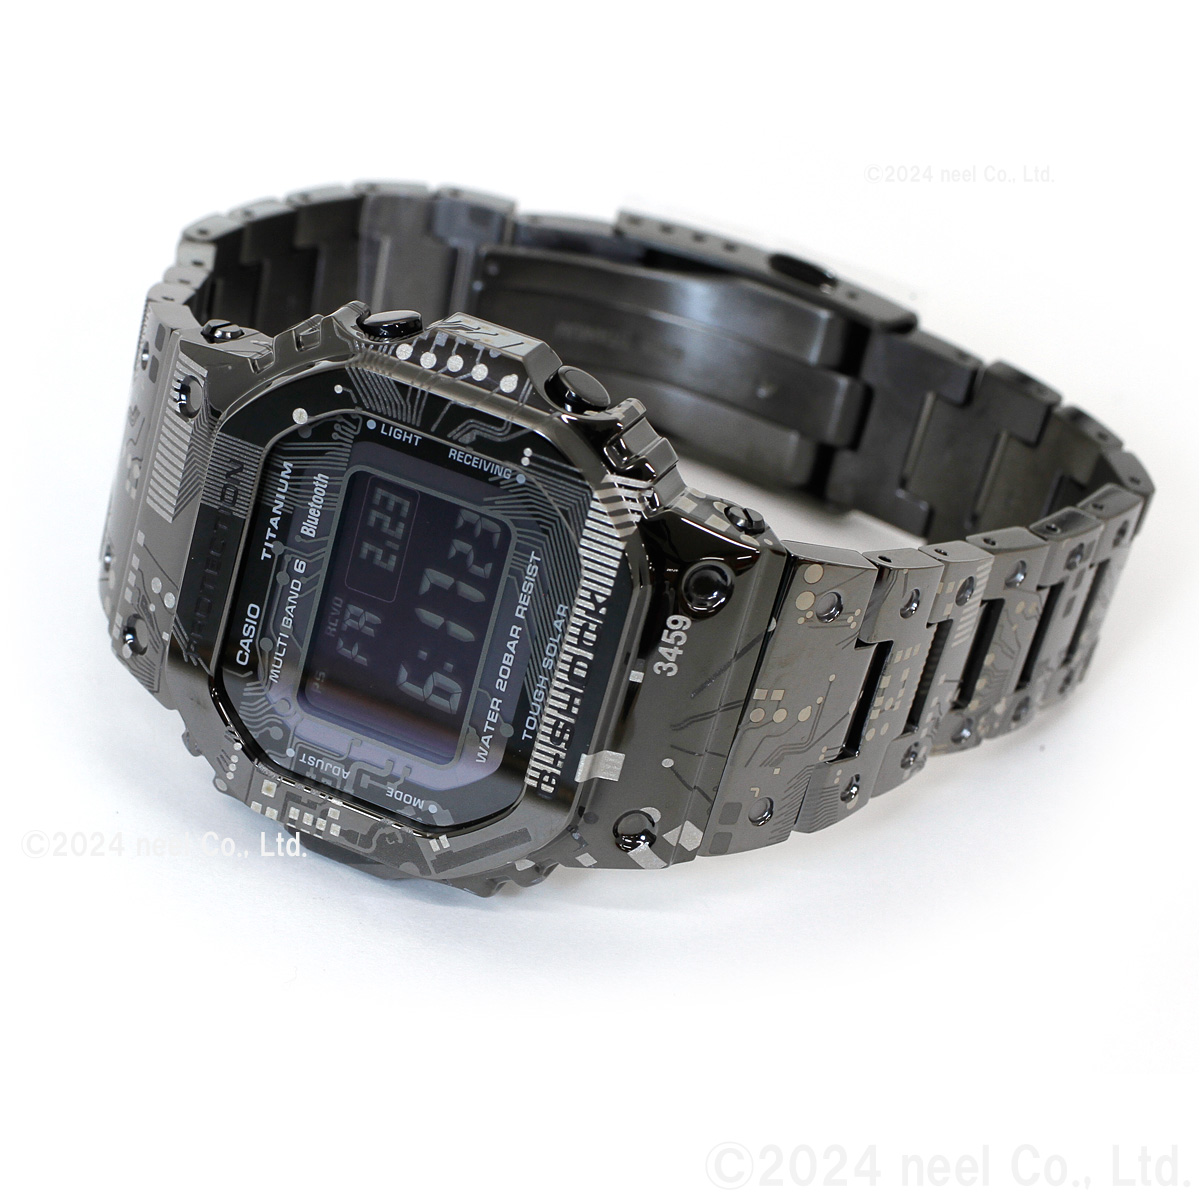 Gショック G-SHOCK 電波 ソーラー デジタル 限定 腕時計 メンズ GMW 